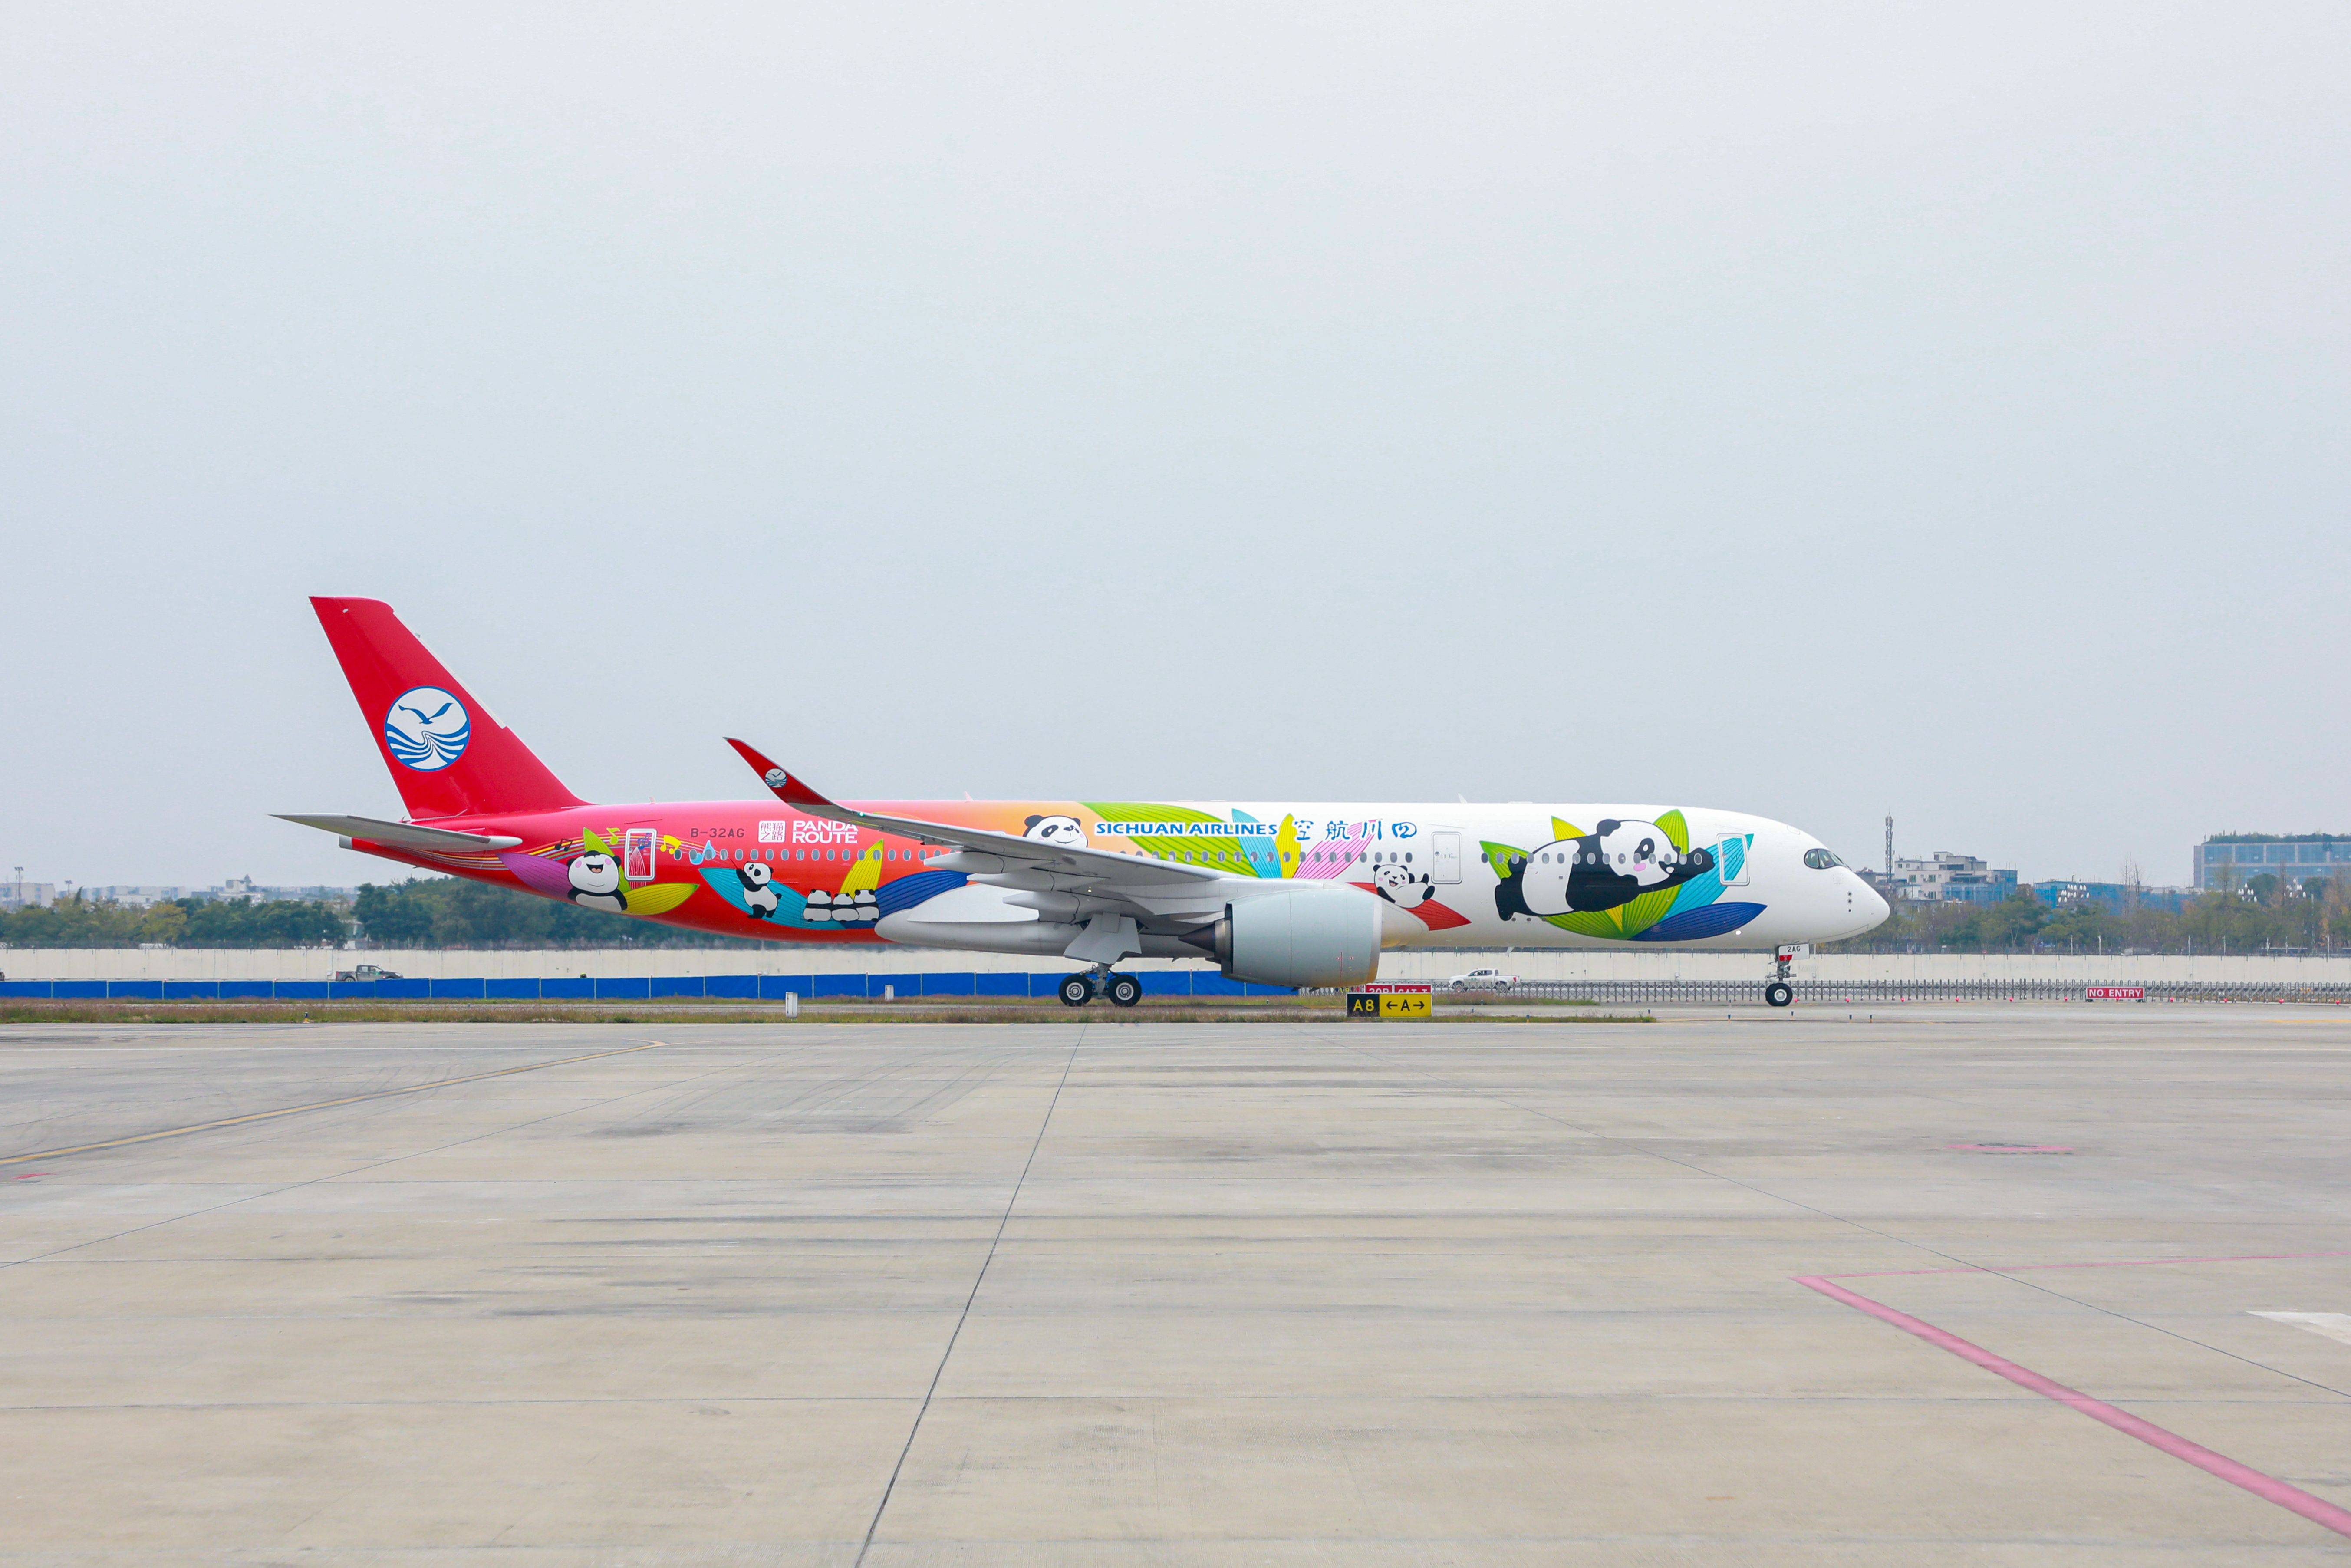 川航第六架A350熊猫主题涂装飞机今日首航_手机搜狐网